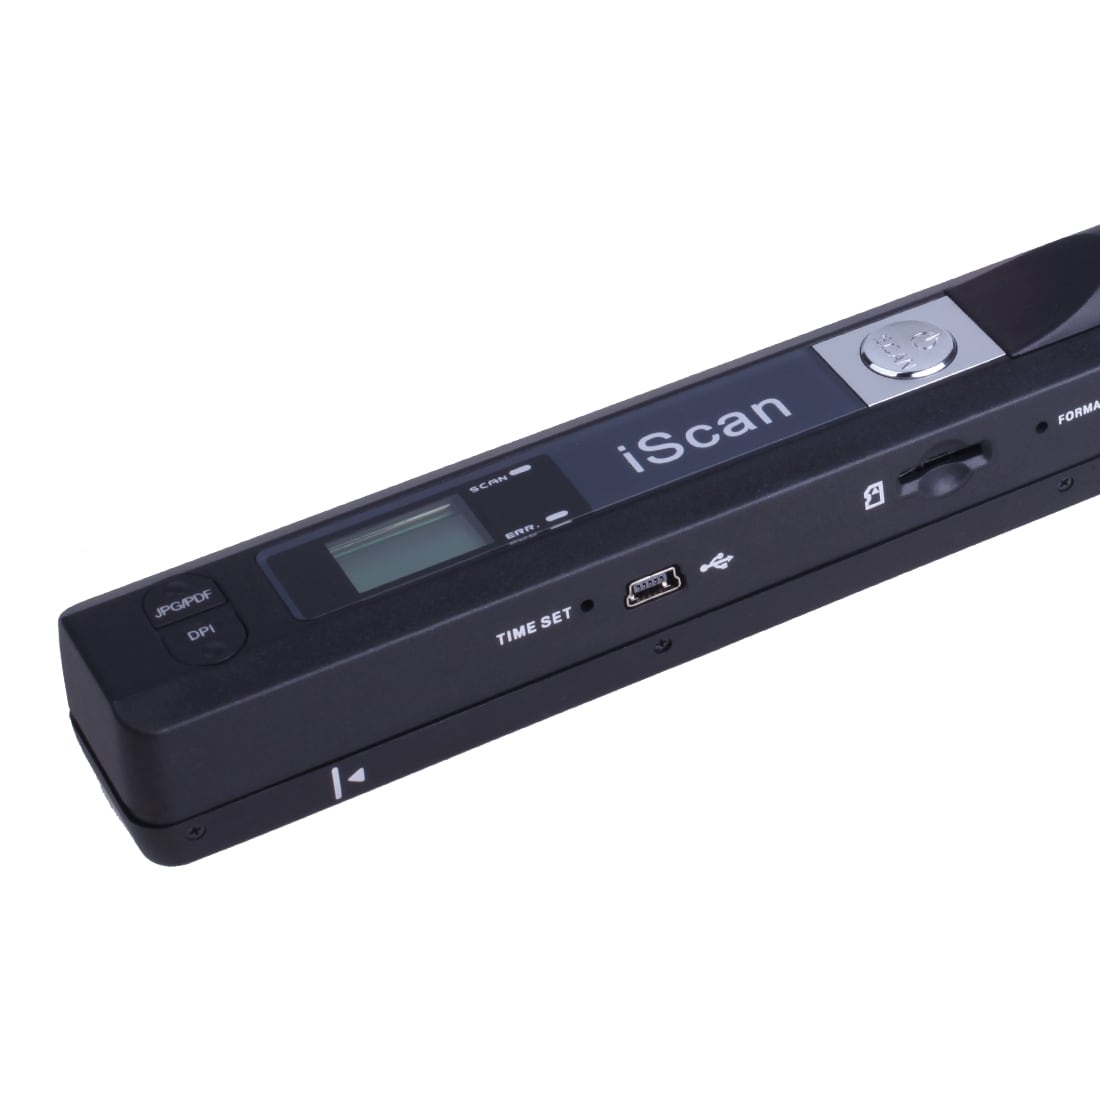 iScan01 Mobil Dokumentscanner A4 med LED display